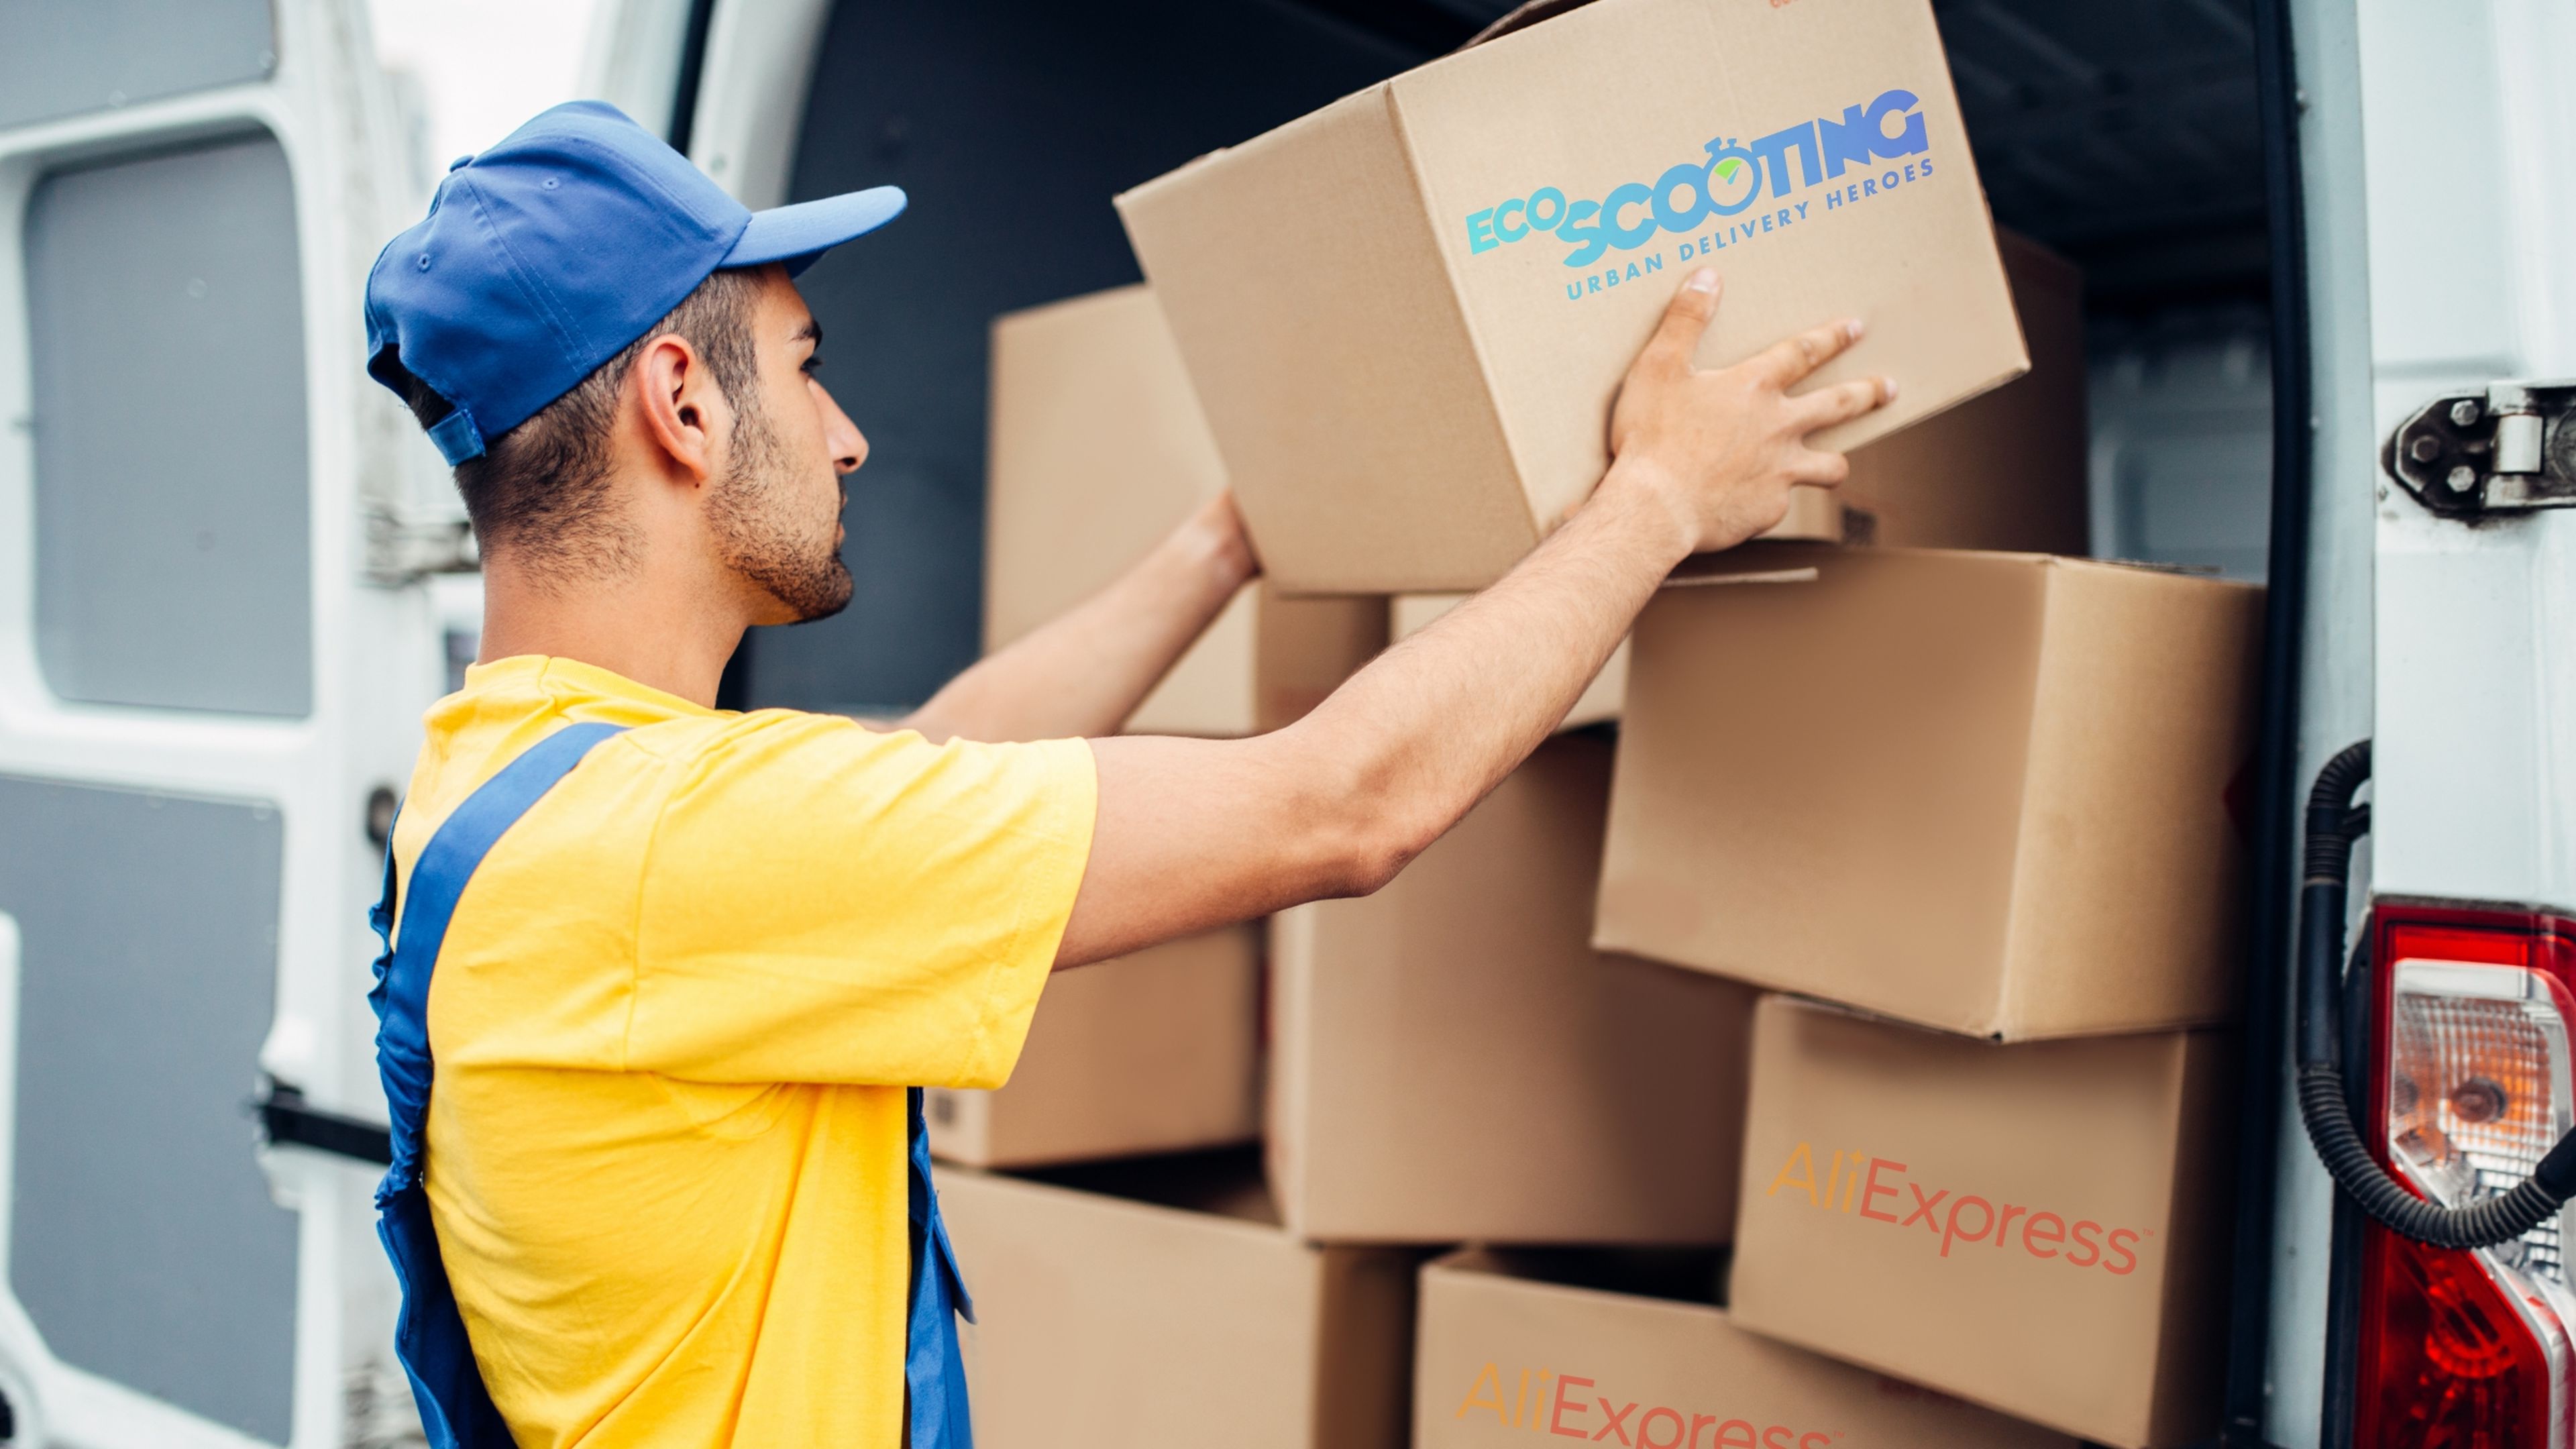 Ecoscooting Delivery, la empresa de reparto de AliExpress: contacto, seguimiento de pedidos e incidencias